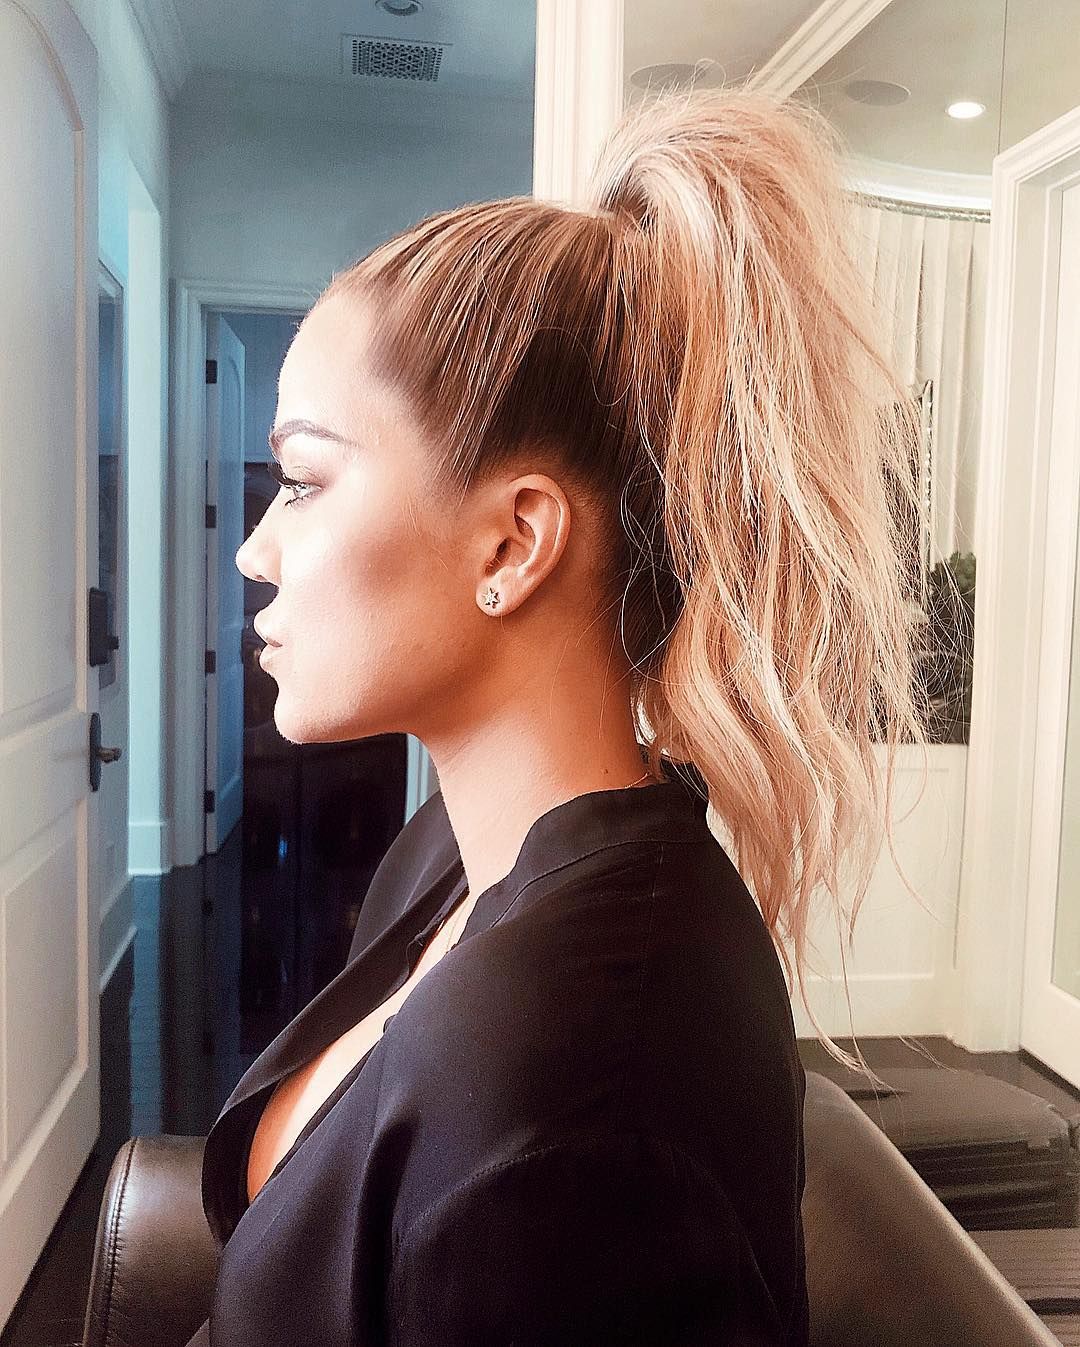 Khloe Kardashian hair